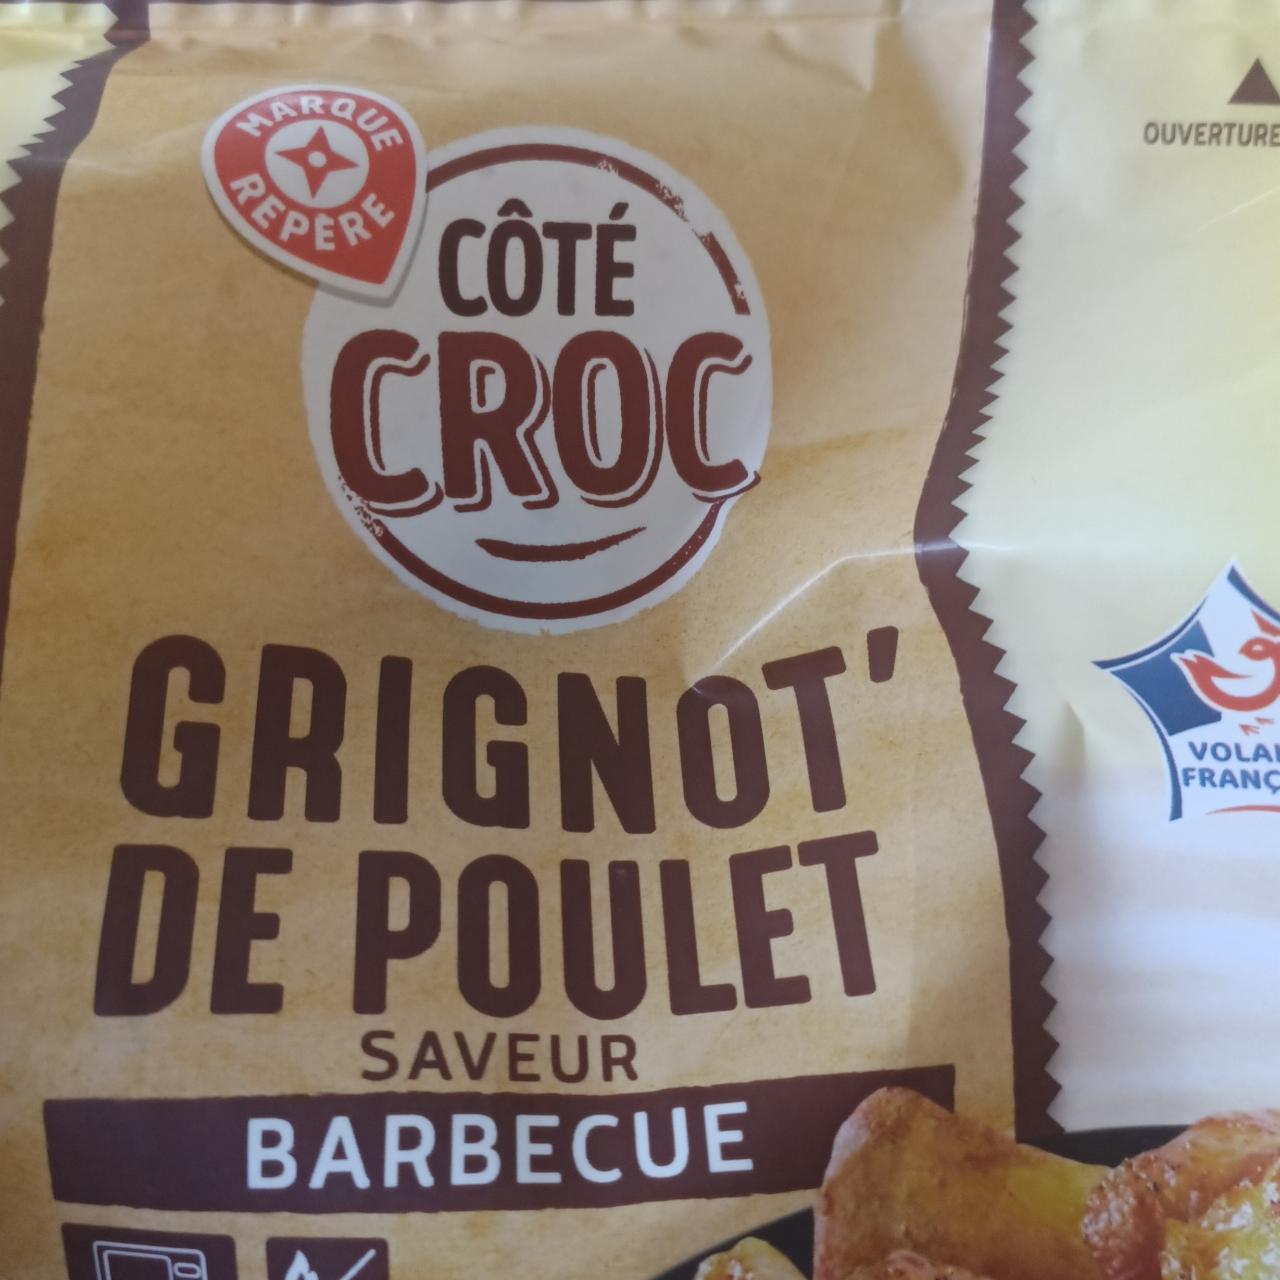 Fotografie - Grinot de poulet saveur barbecue Coté croc